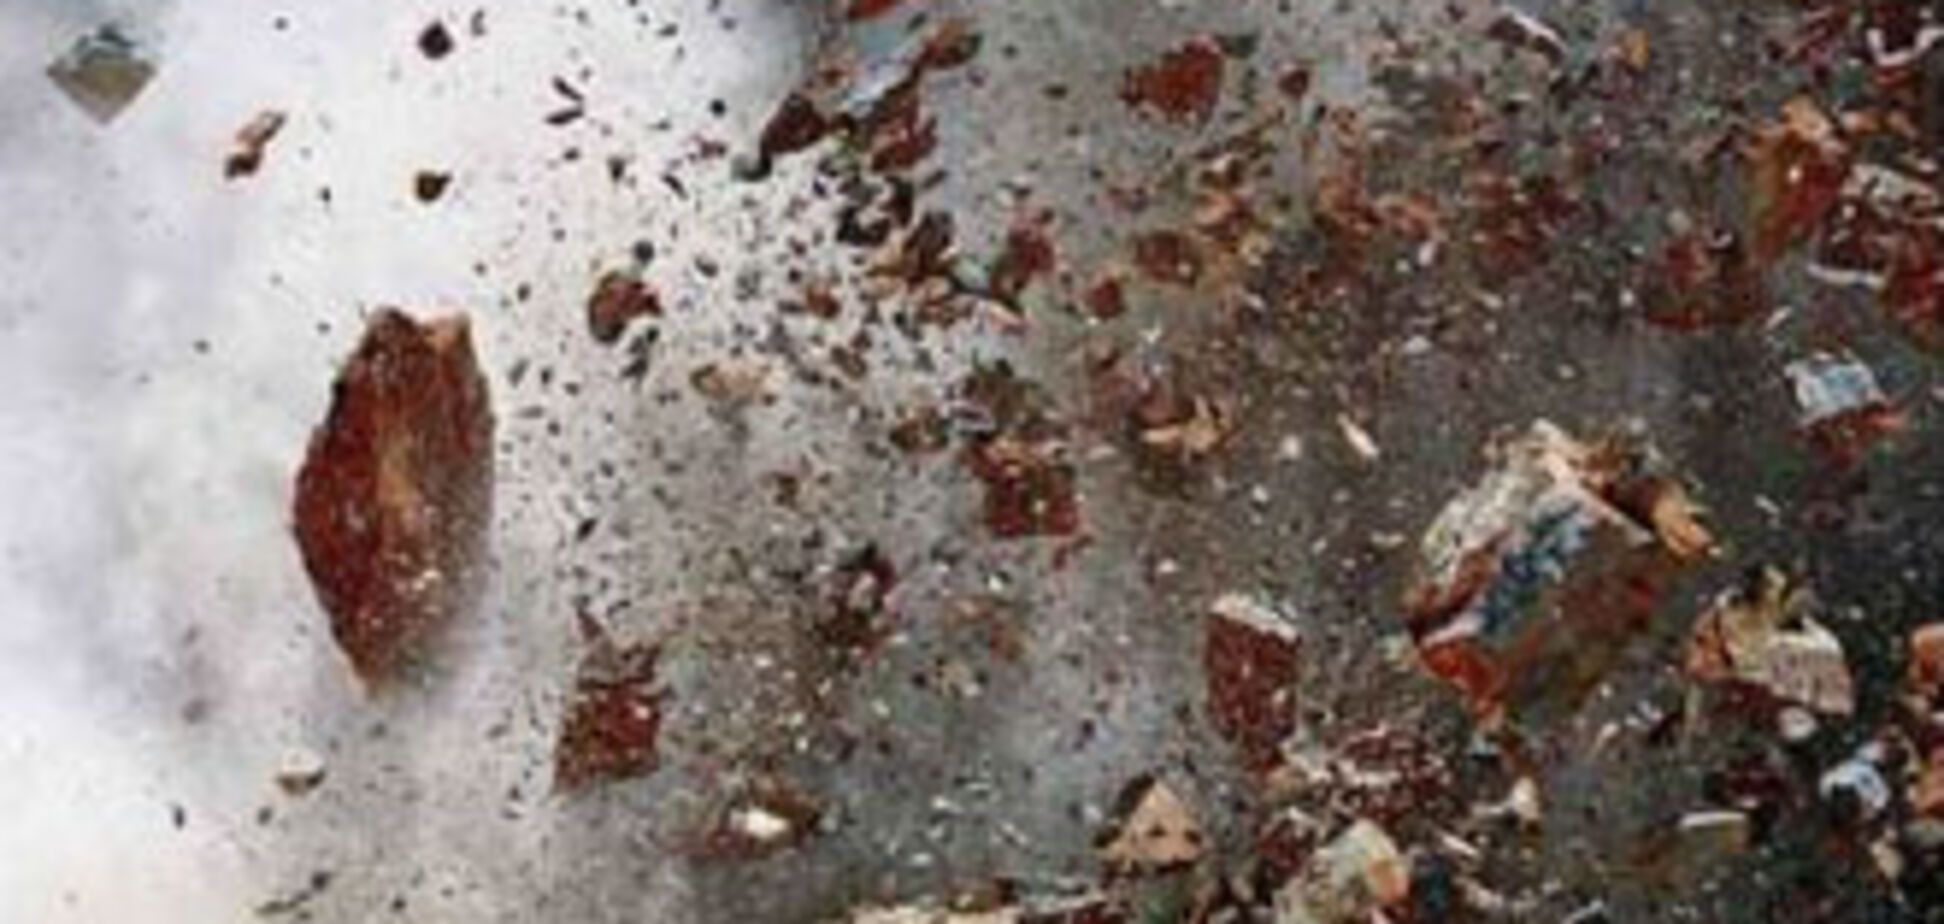 Більше 100 людей постраждали від вибуху на хімзаводі